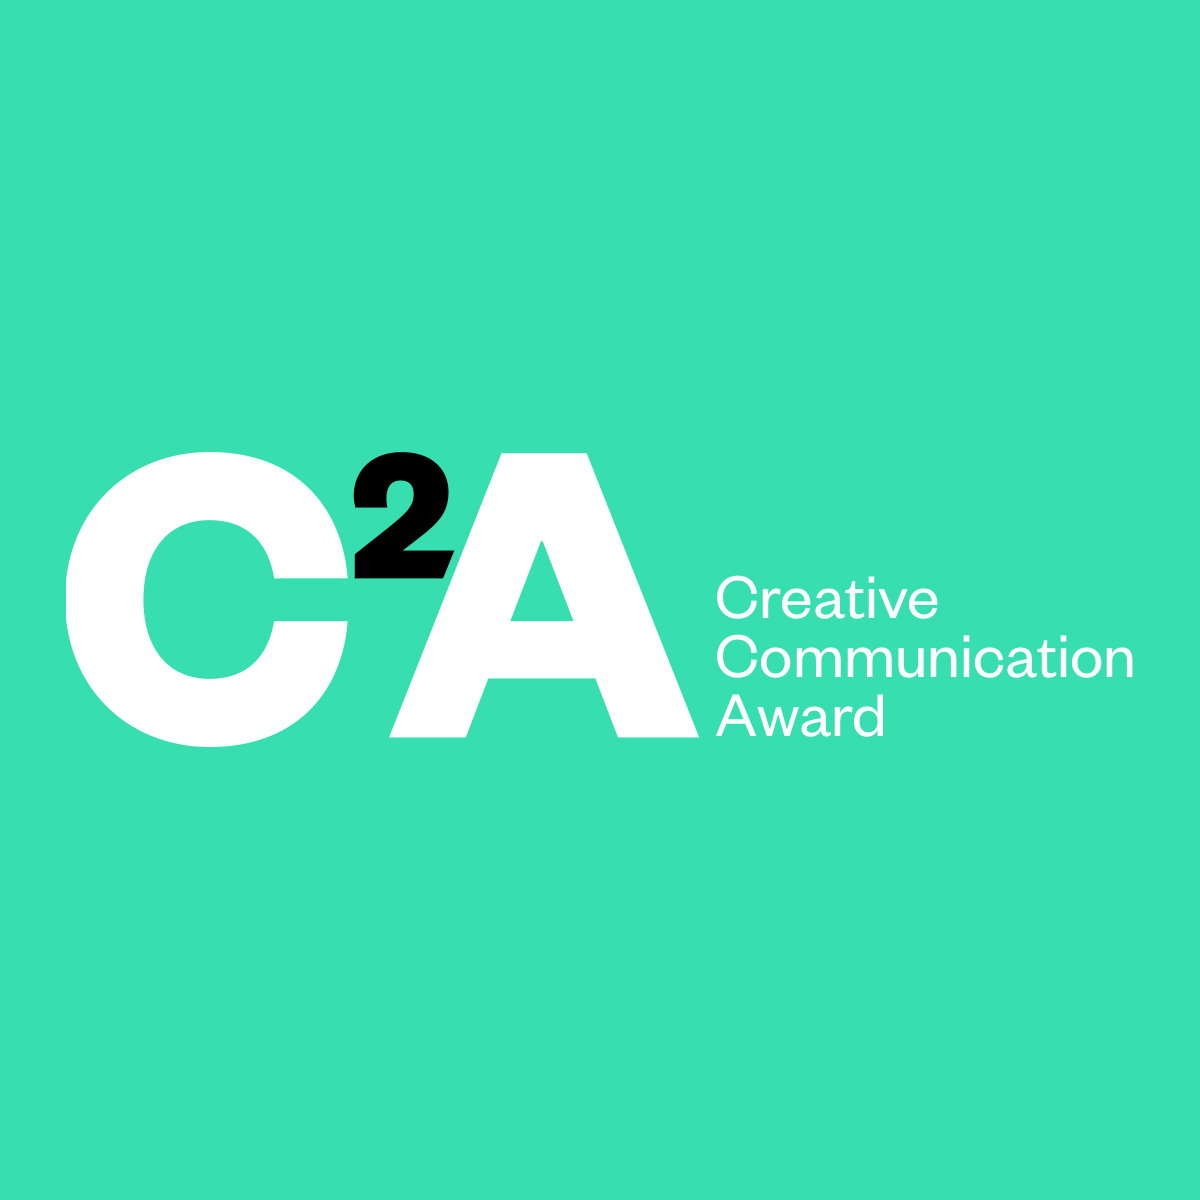 فراخوان جایزه ارتباطات خلاق 2021 C2A